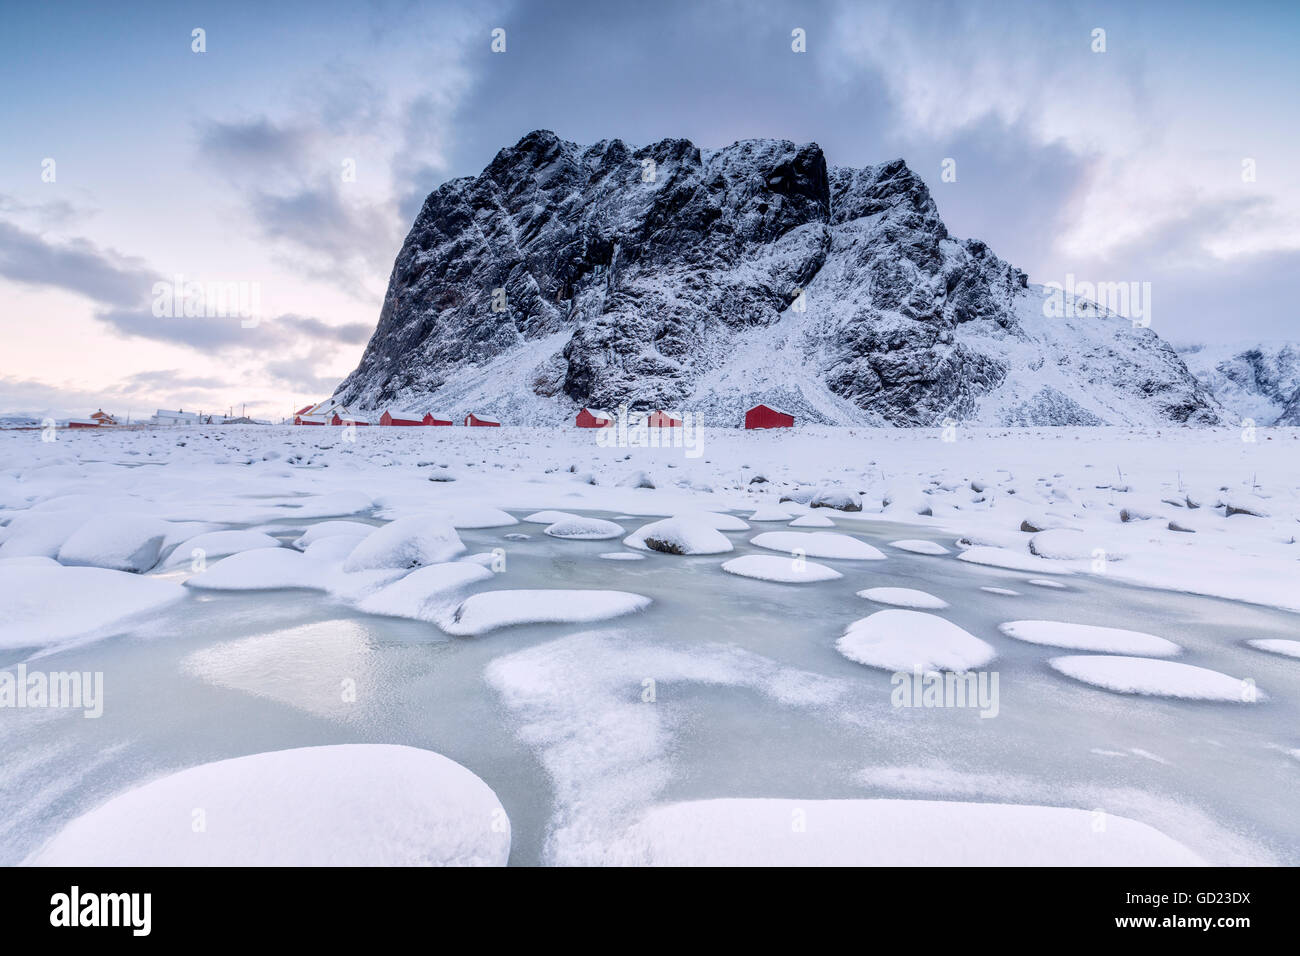 Des sommets enneigés et des maisons de pêcheurs typiques de la trame appelé Rorbu, Eggum, Île Vestvagoy, îles Lofoten, Norvège Banque D'Images